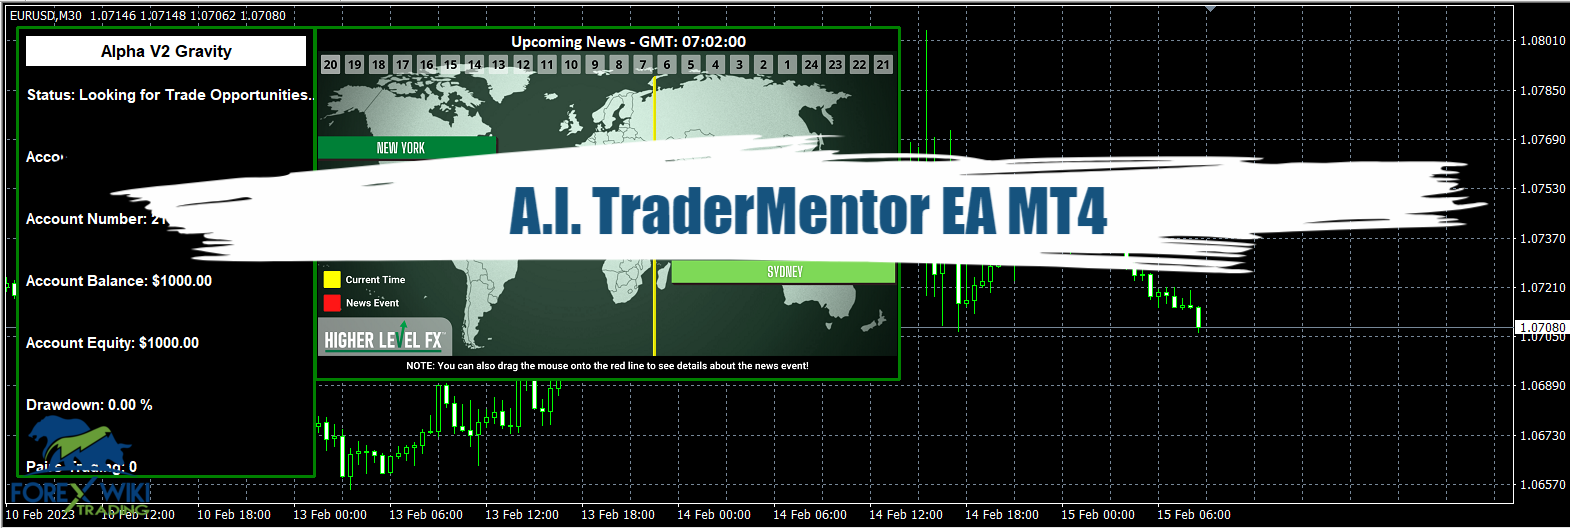 A.I. TraderMentor EA MT4 - Free Download 25